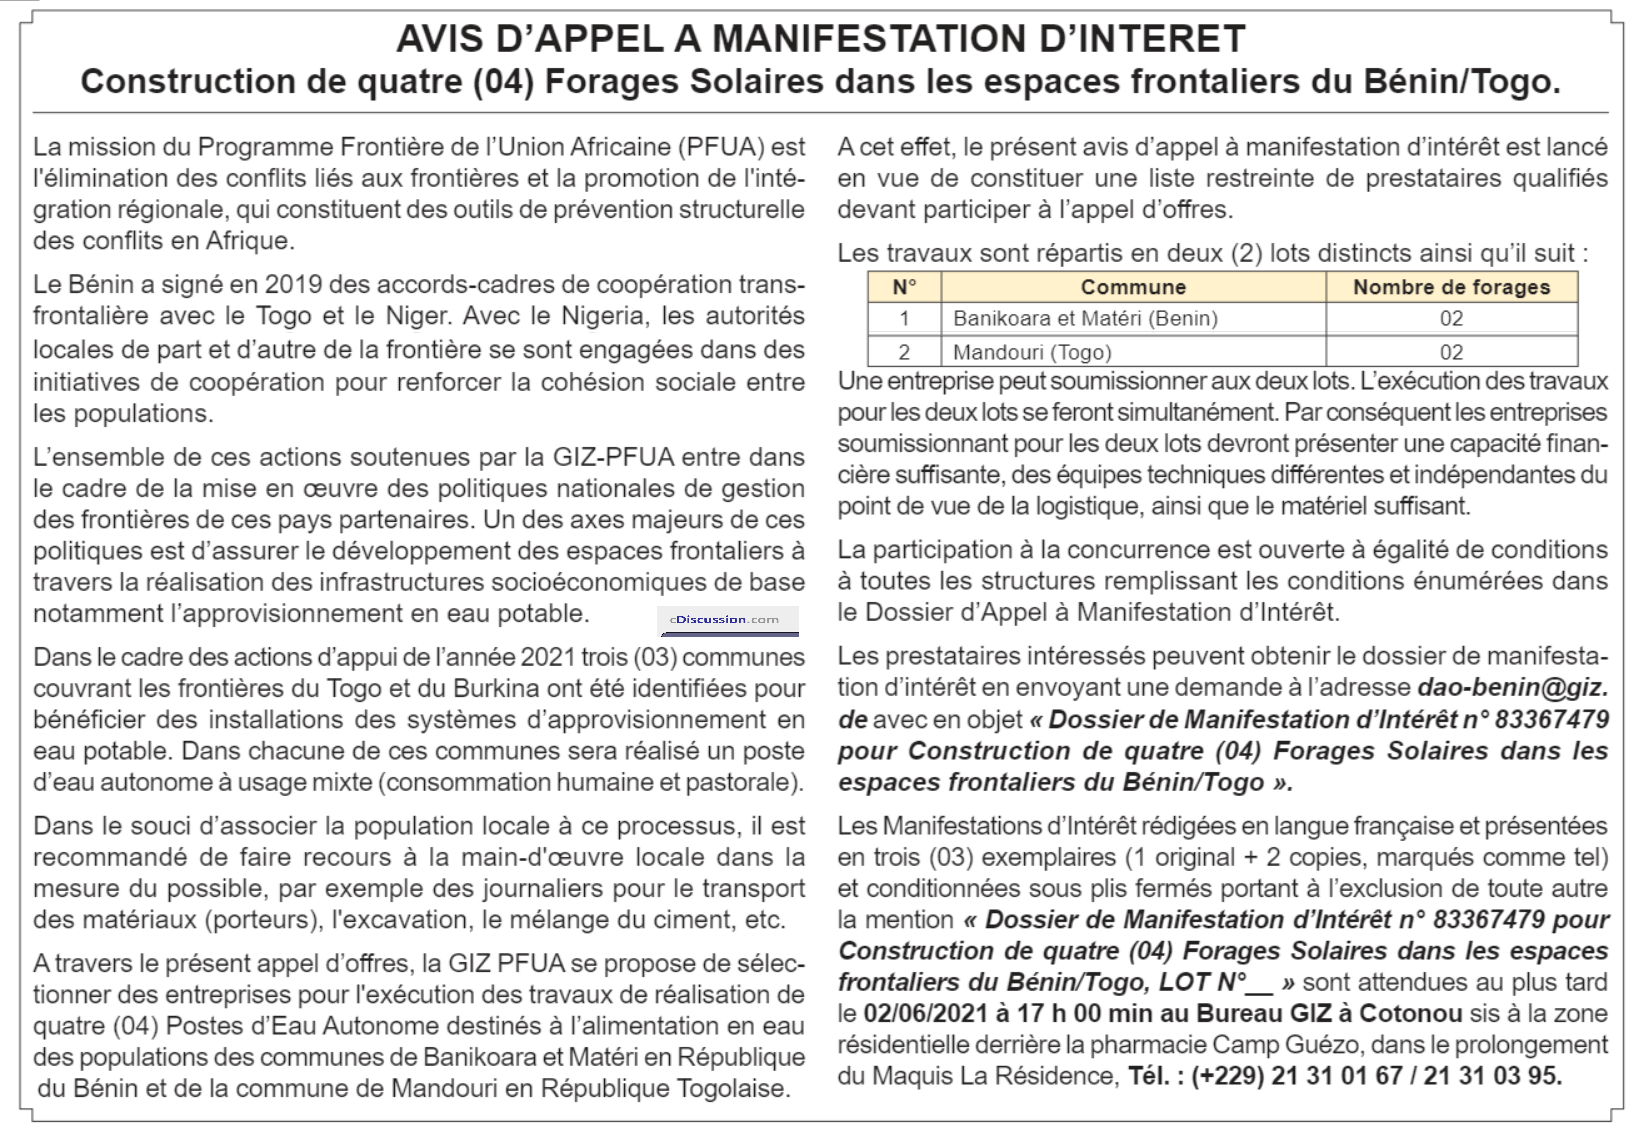 20210511140518 - Avis d'Appel à Manifestation d'Intérêt pour la Construction de quatre (04) Forages Solaires dans les Espaces Frontaliers du Bénin/Togo